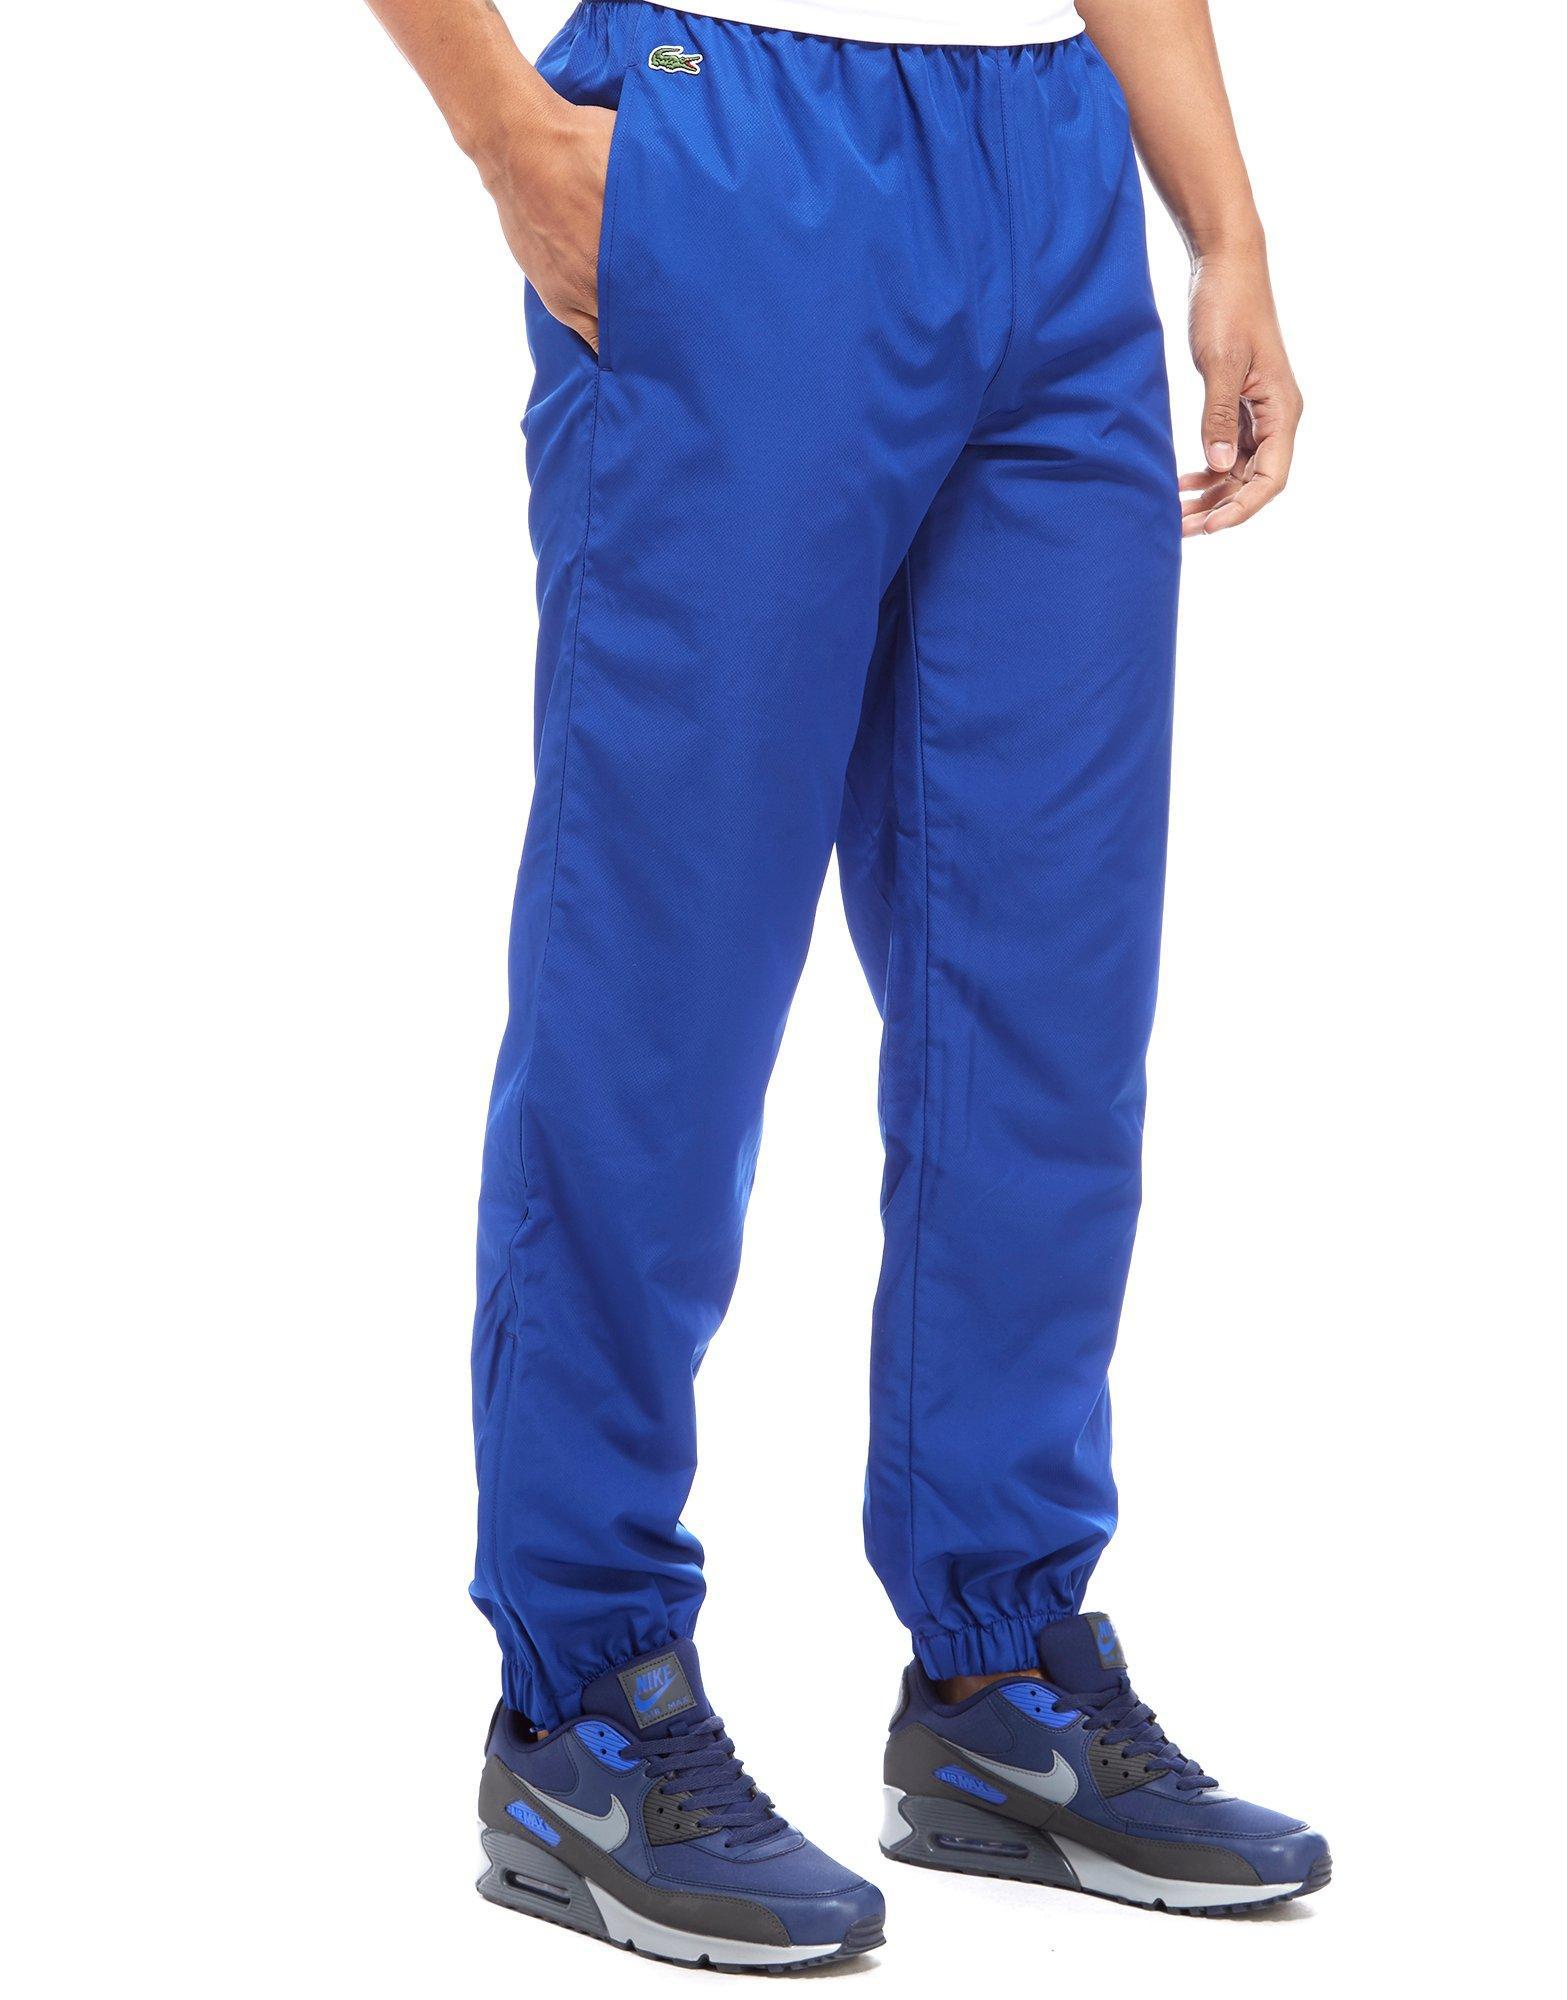 lacoste blue pants